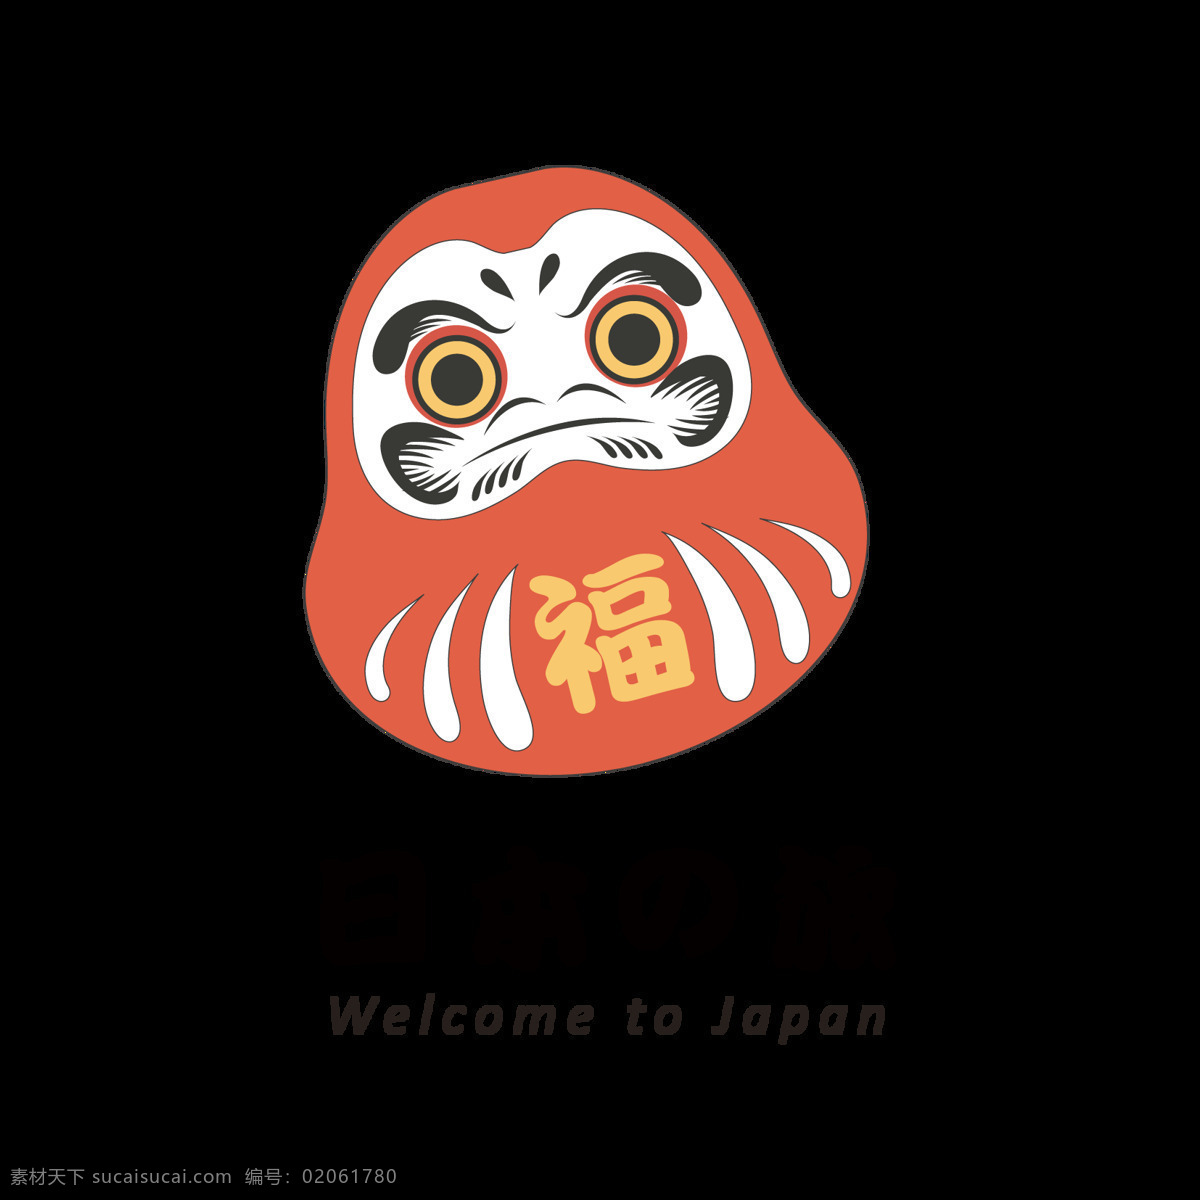 红色 可爱 玩偶 日本旅游 装饰 元素 红色玩偶 清新风格 日本文化 日本印象 日式元素 装饰元素